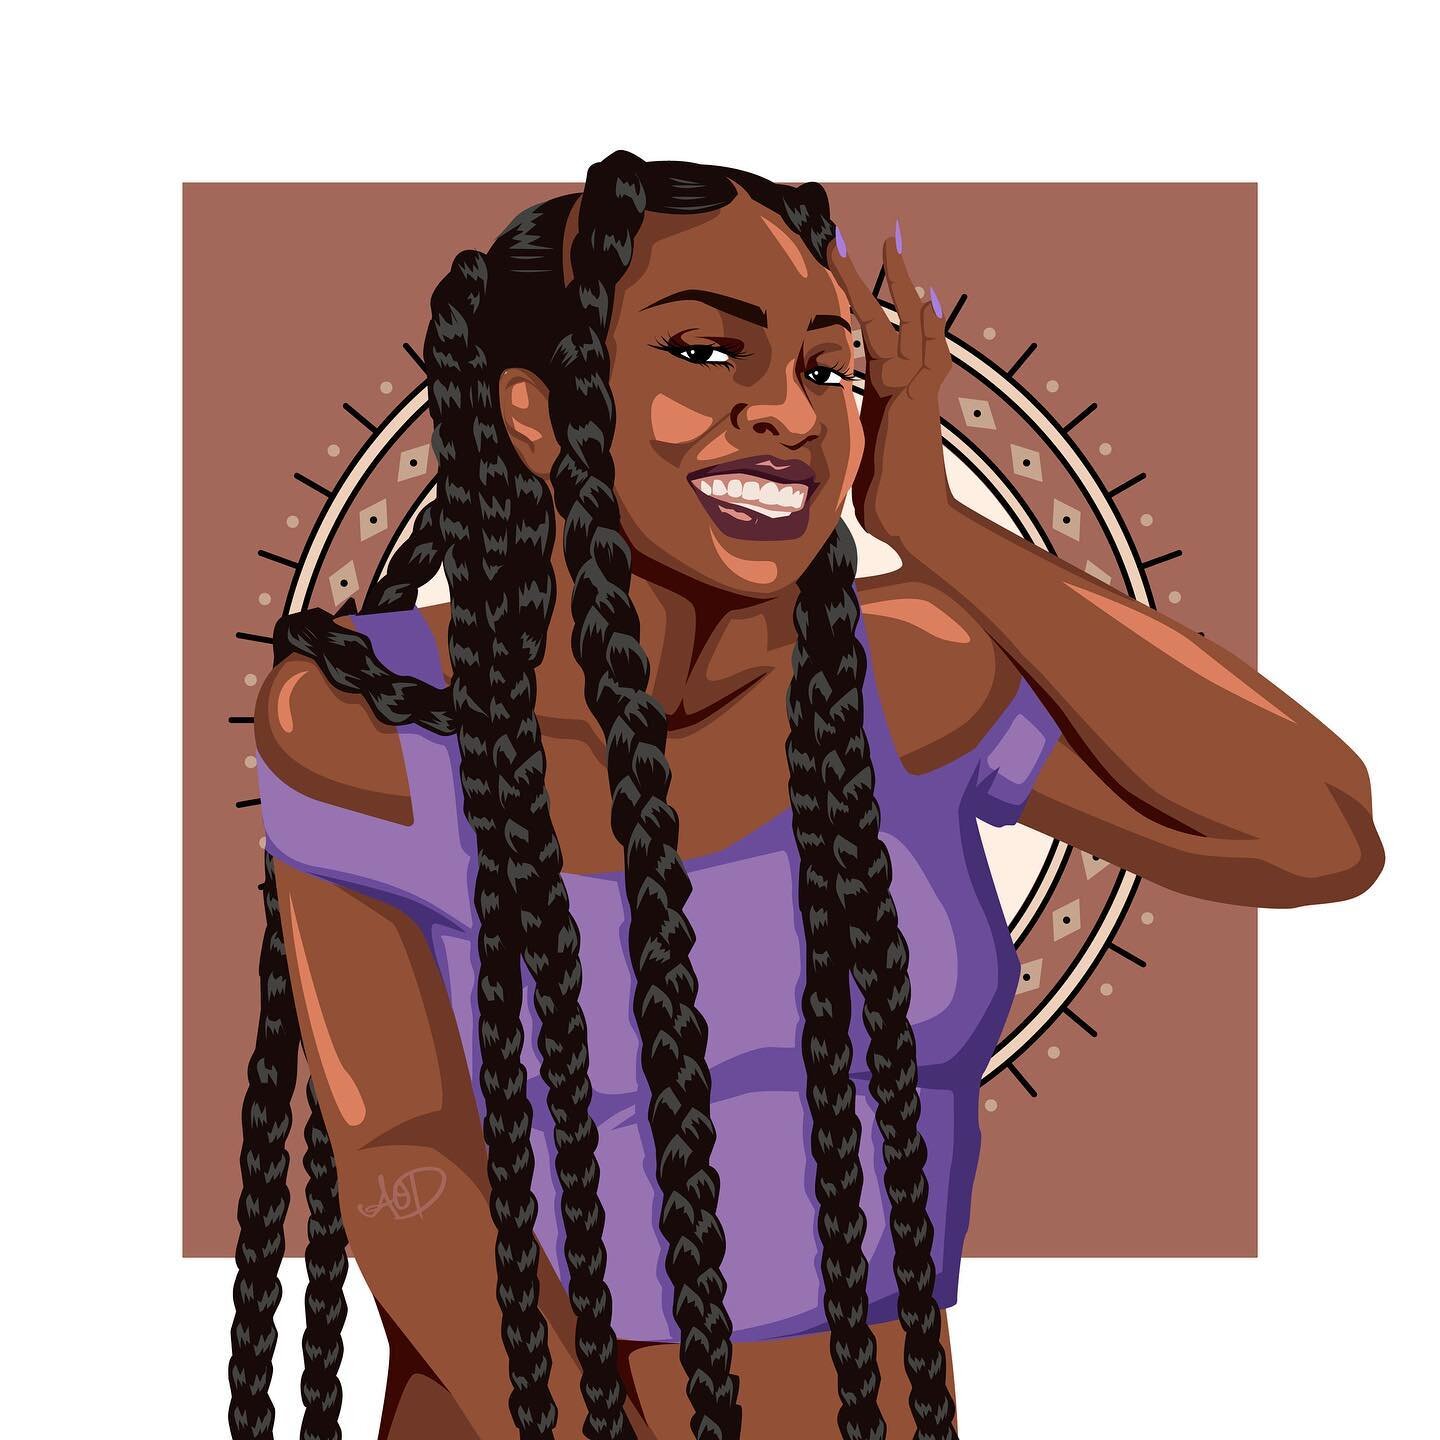 A new Melanin Queen. 👑 

#melaninqueen #digitalart #afro #digitalart #africandigitalart #creative #africaninspired #illustration #artwork #appreciateblack #art #vectorart #adobe #illustrator #supportblackartists #blackartistspace #drawing #vector #v